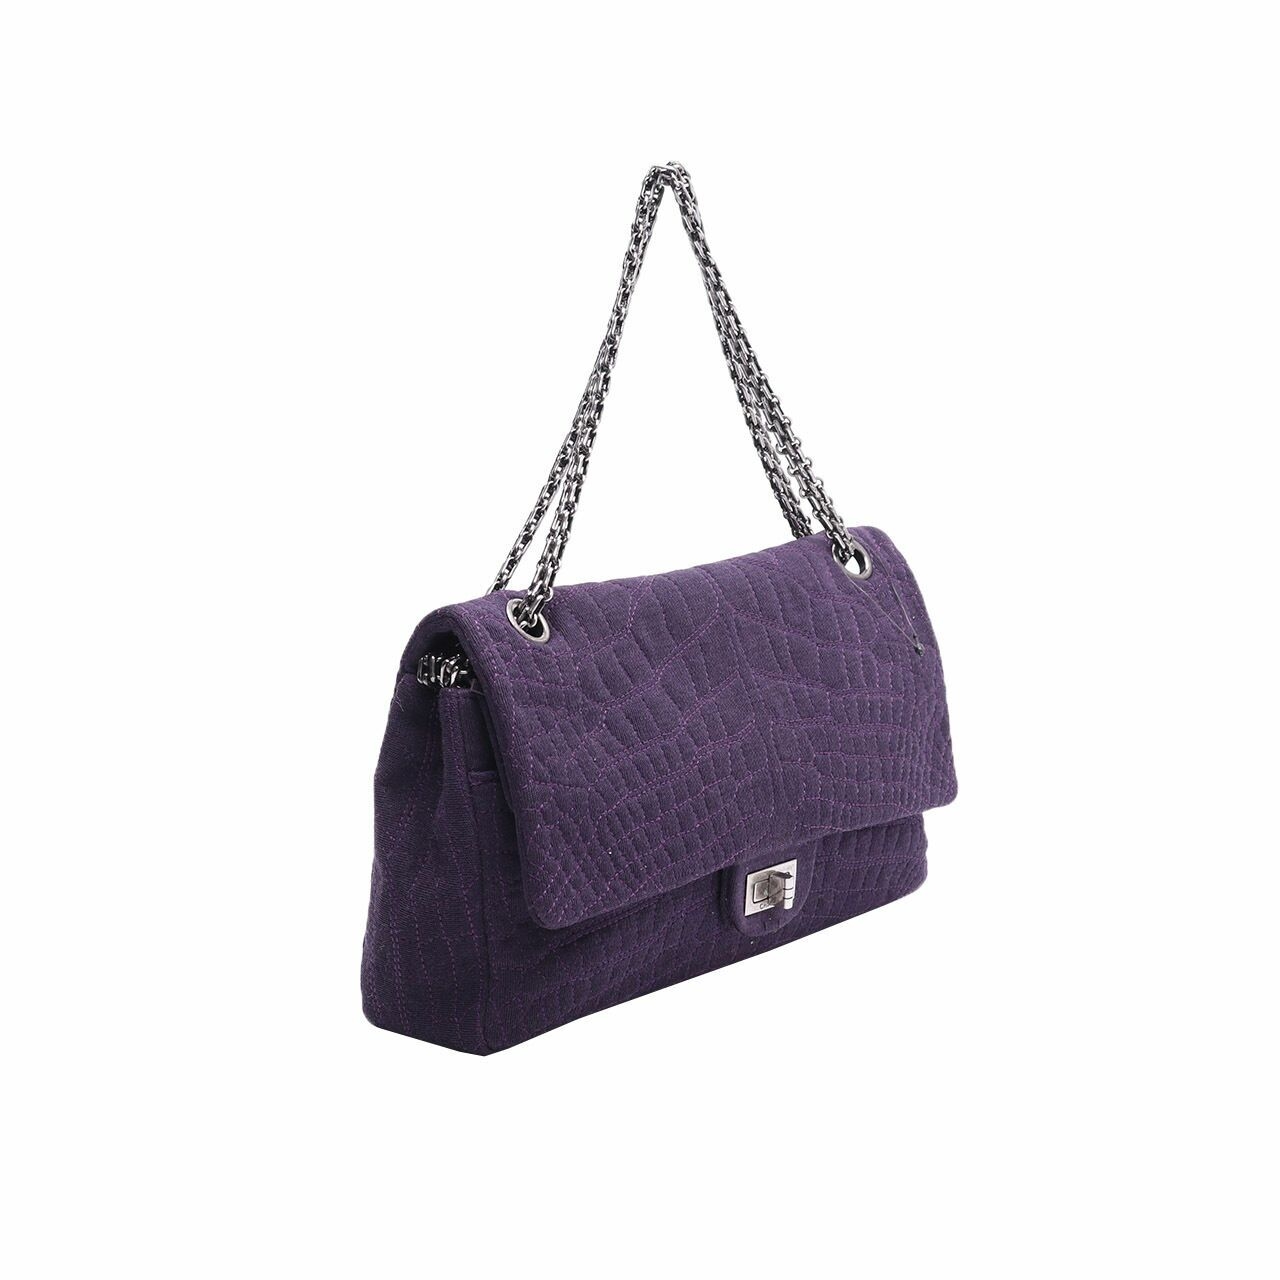 Chanel 2.55 Reissue Classic Purple Shoulder Bag